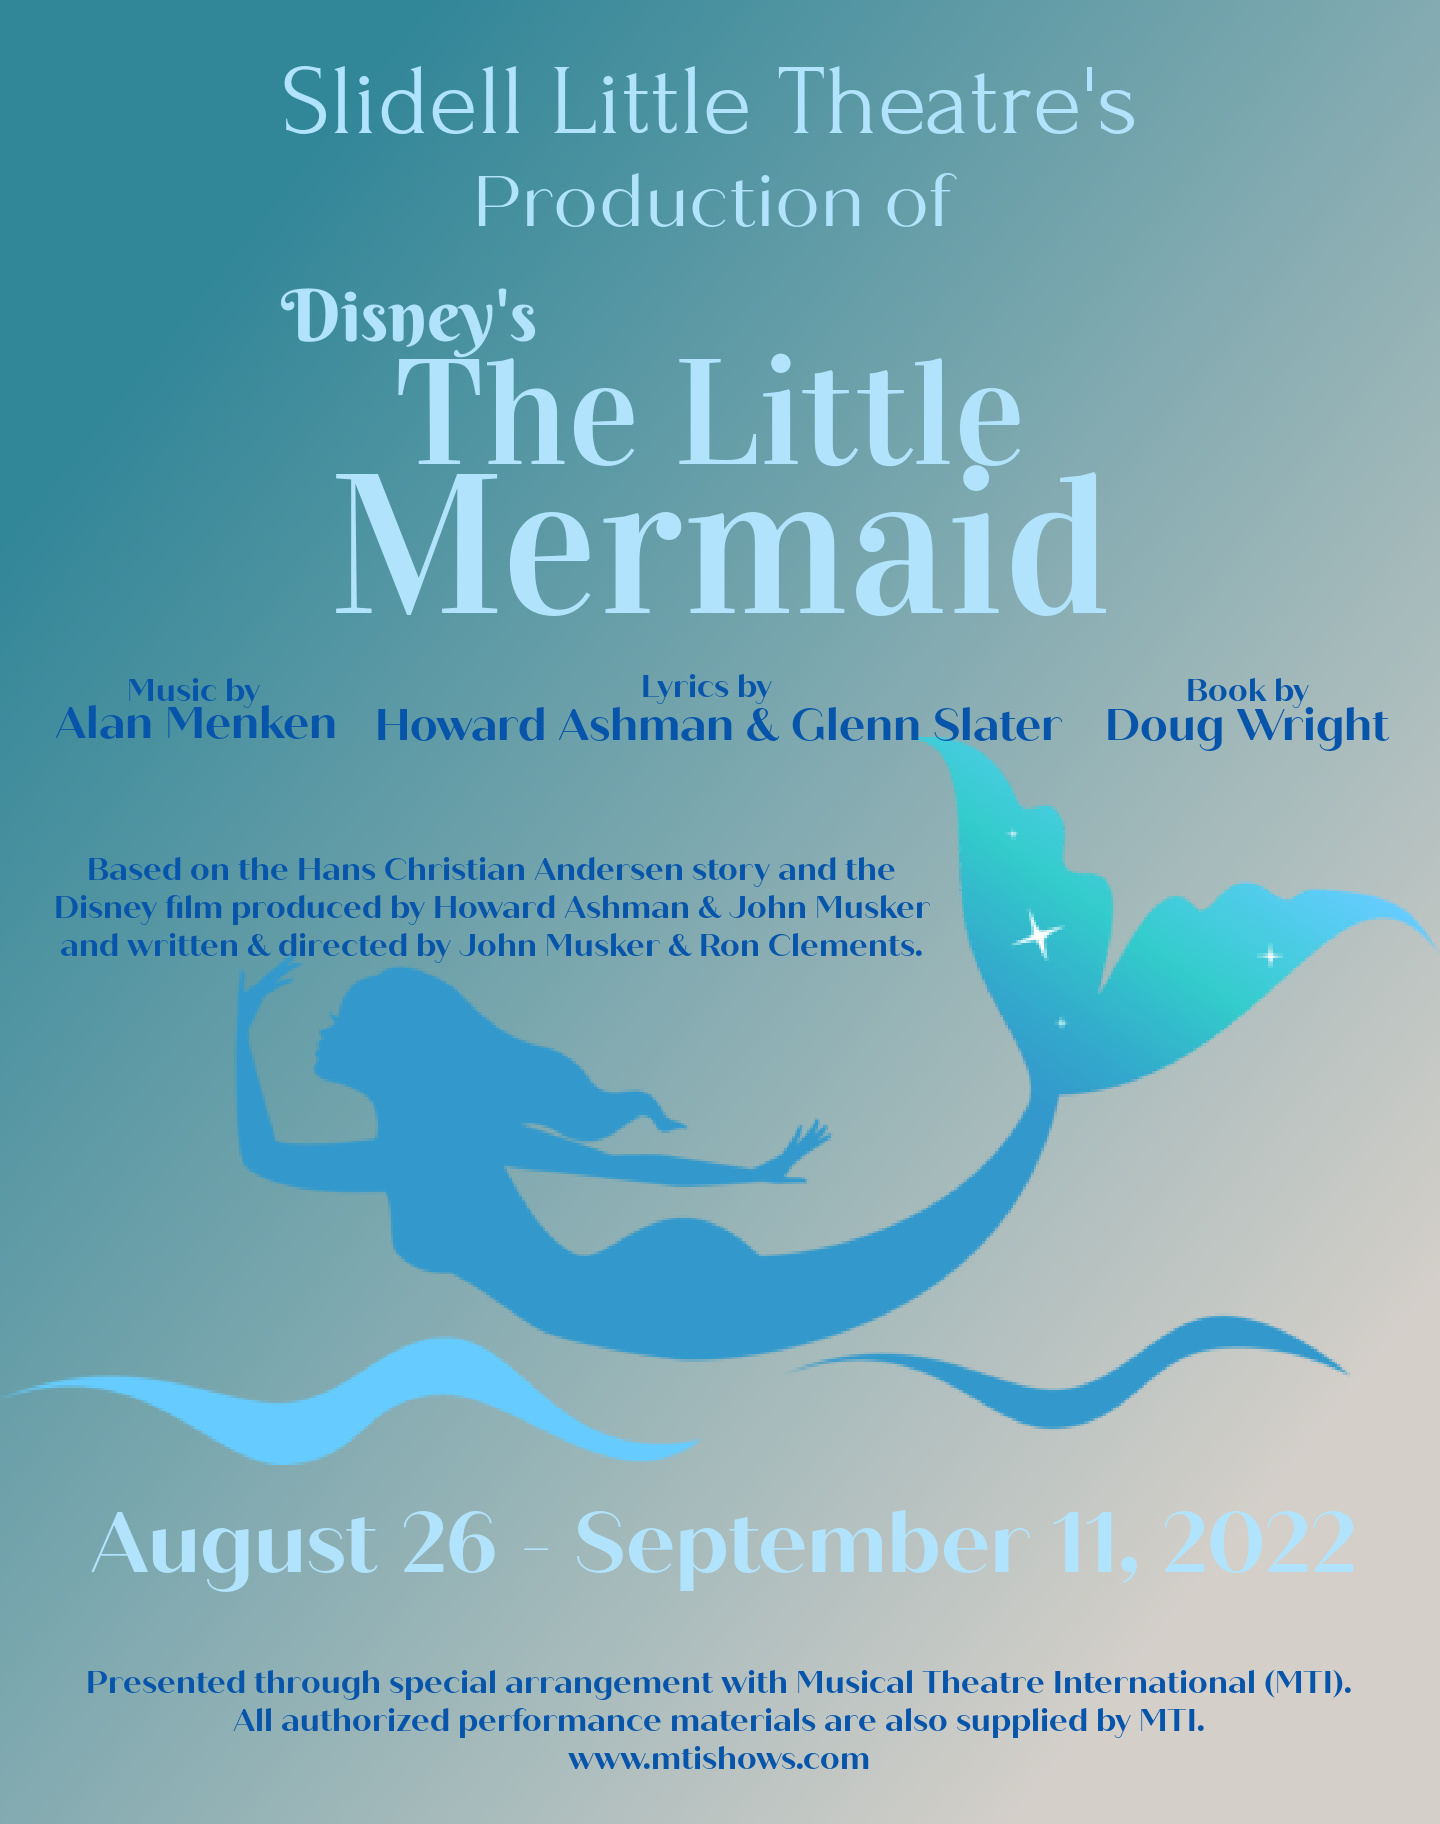 Slidell Little Theatre's production of Disney's The Little Mermaid
August 26 - September 11, 2022